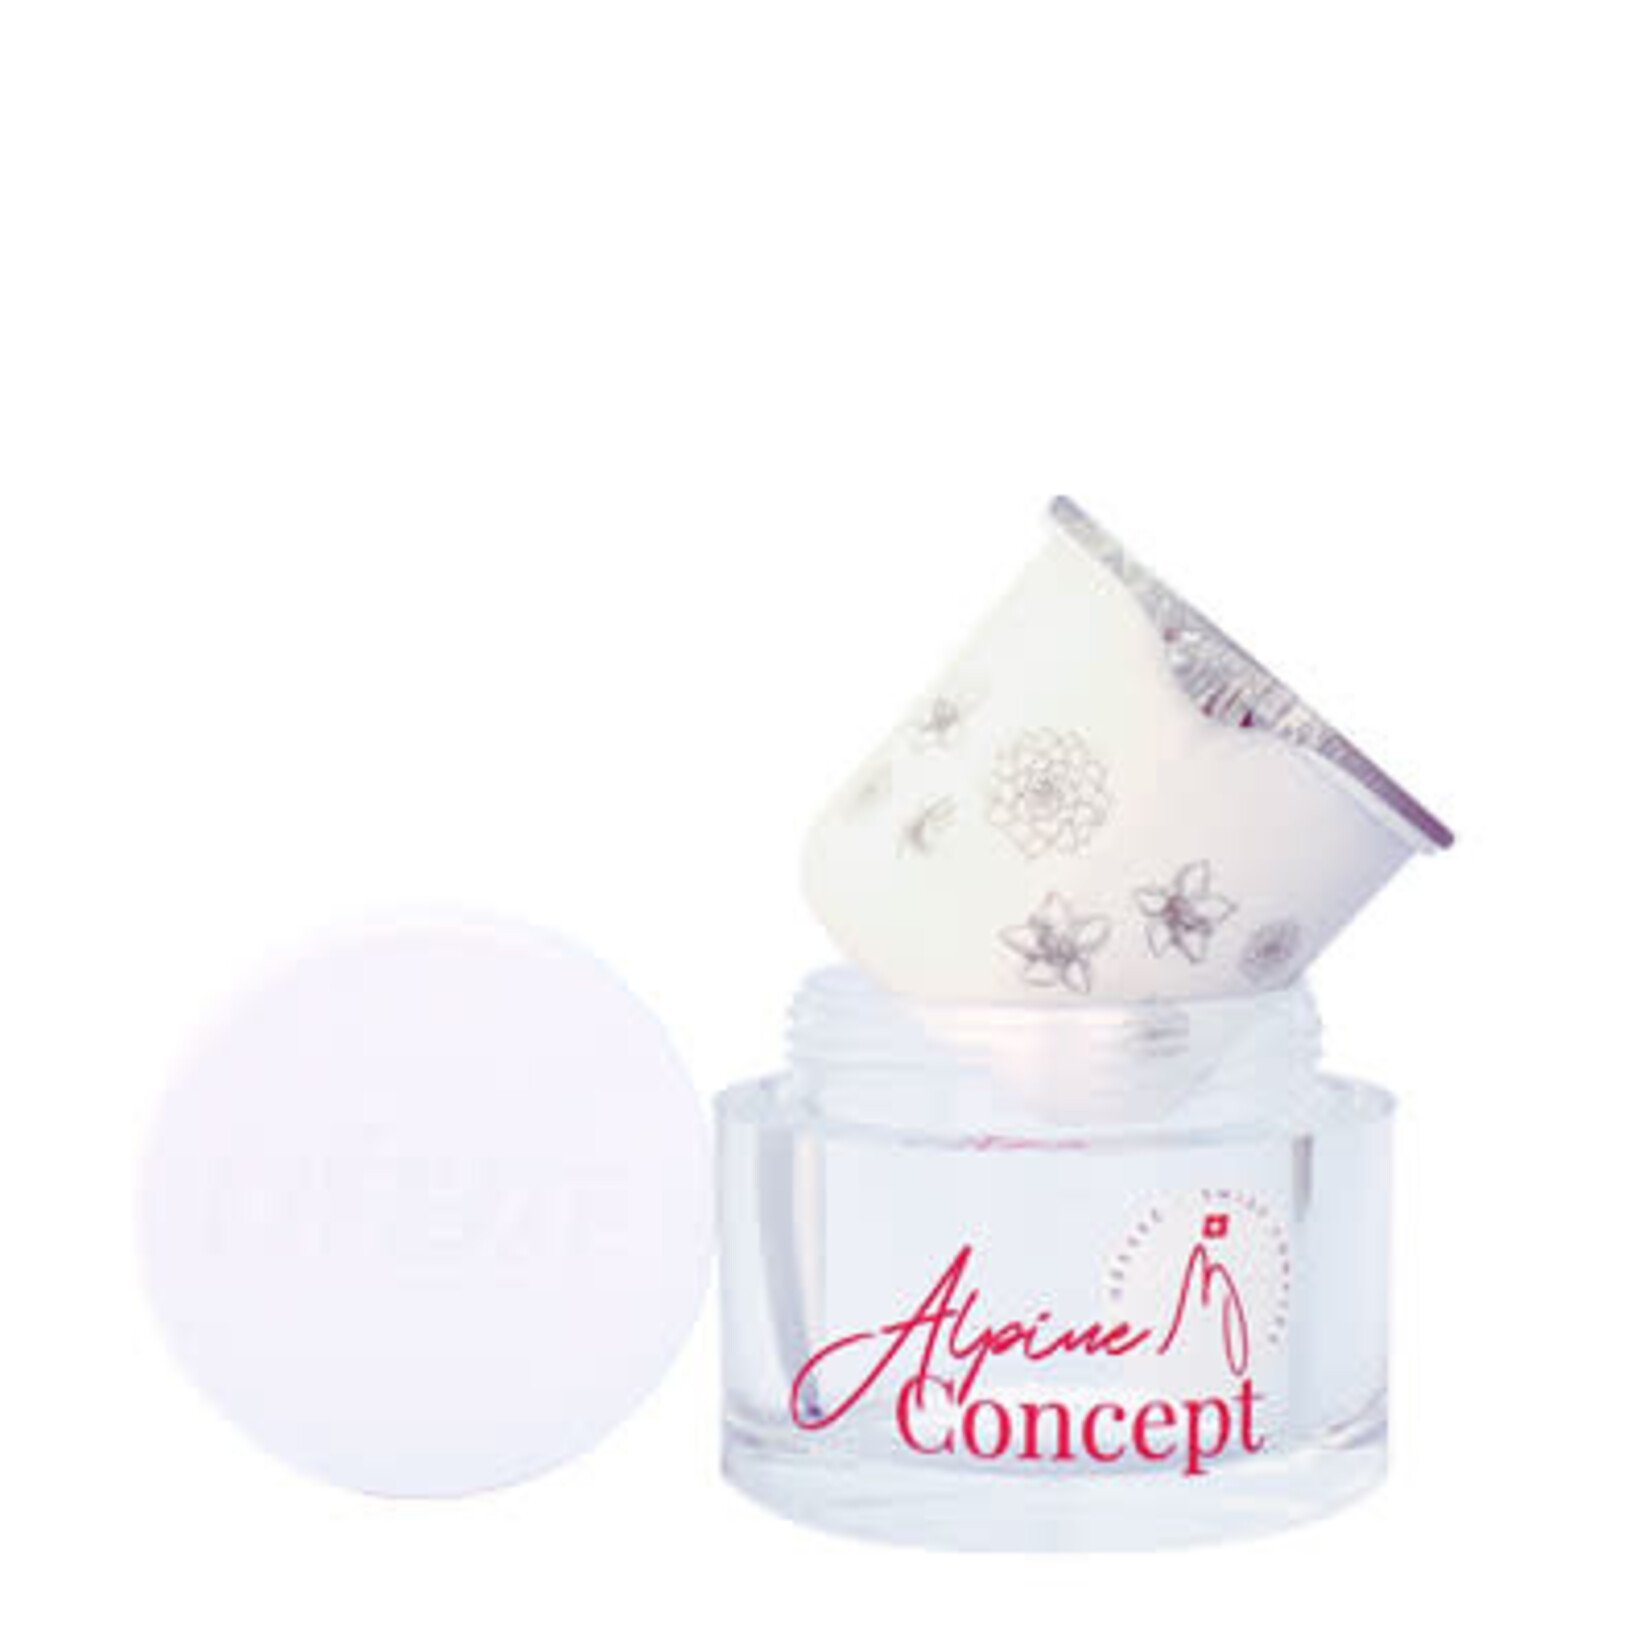 Alpine Concept day cream refill 50 ml